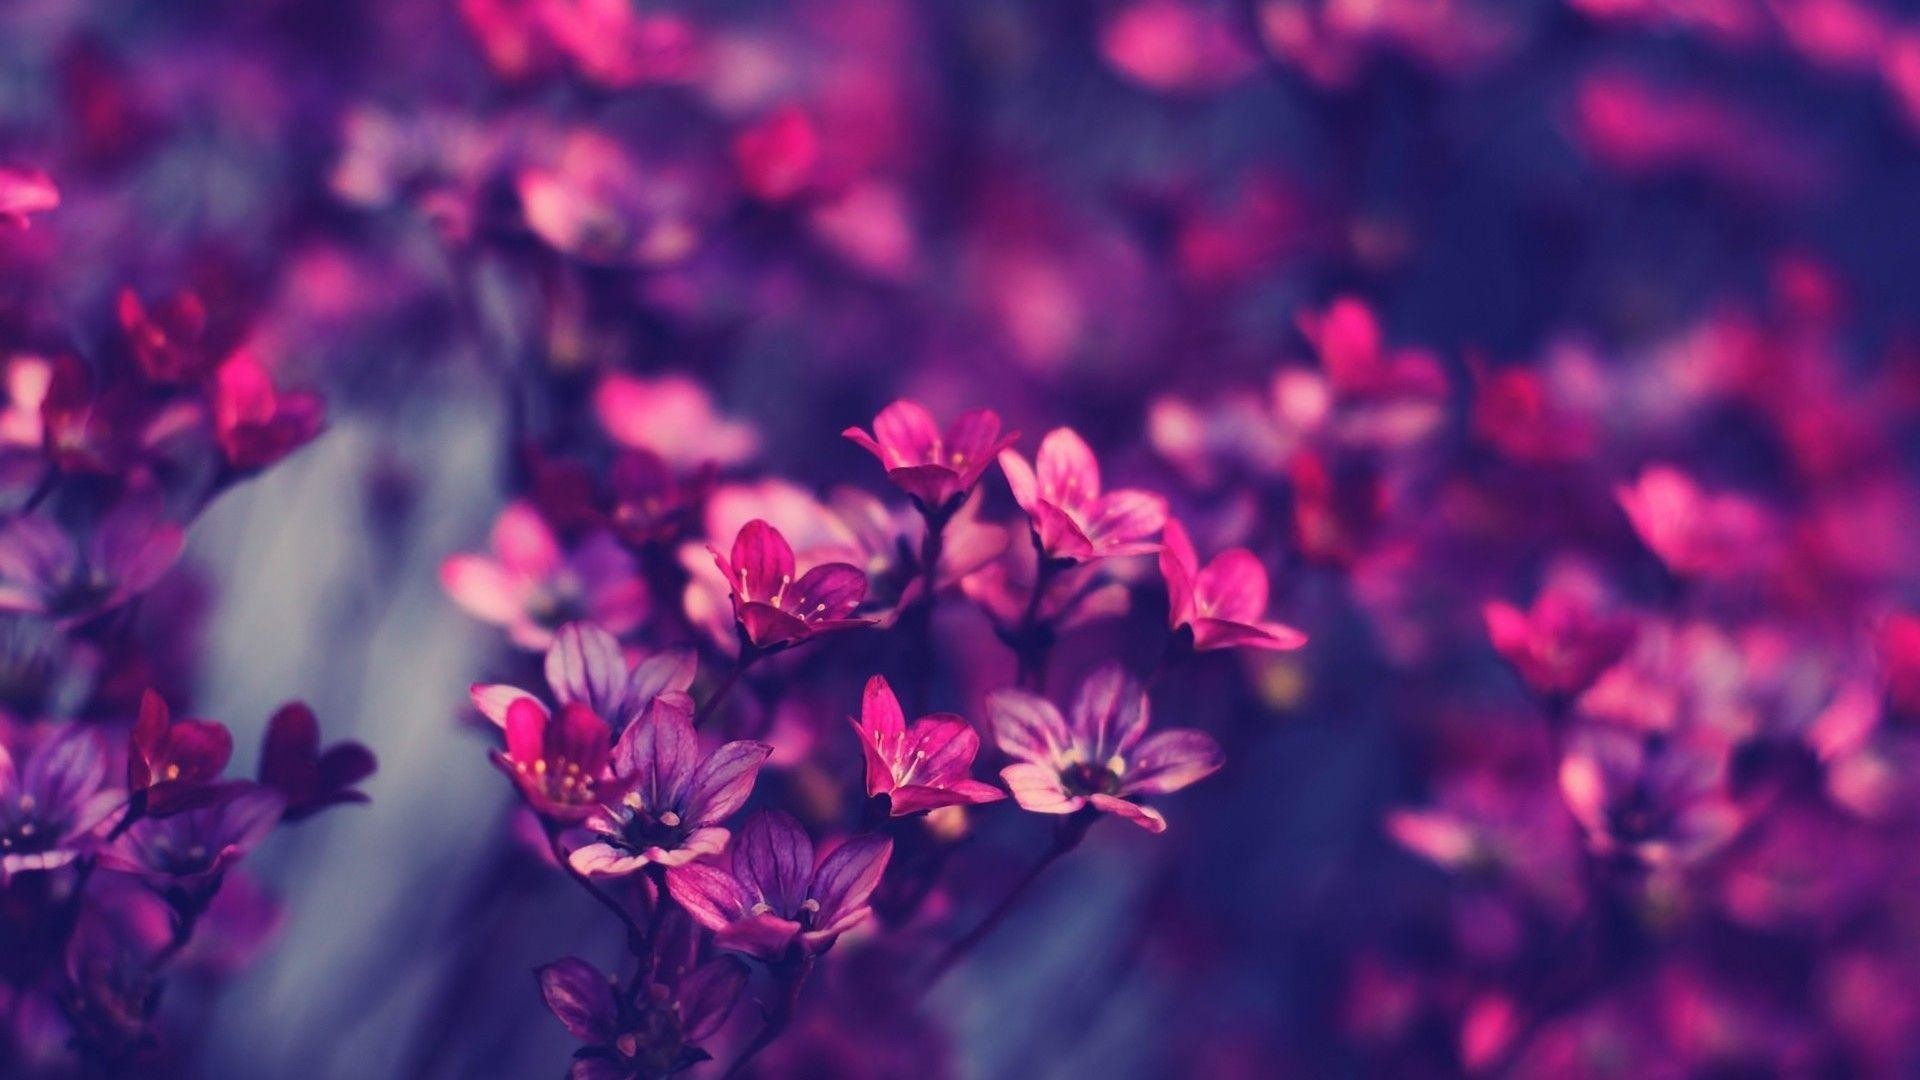 Hoa là biểu tượng của tình yêu, tình bạn và sự tươi mới. Hình nền hoa HD tràn đầy màu sắc và cuốn hút, mang đến cho bạn cảm giác thư giãn và an tâm khi lướt web hay làm việc.